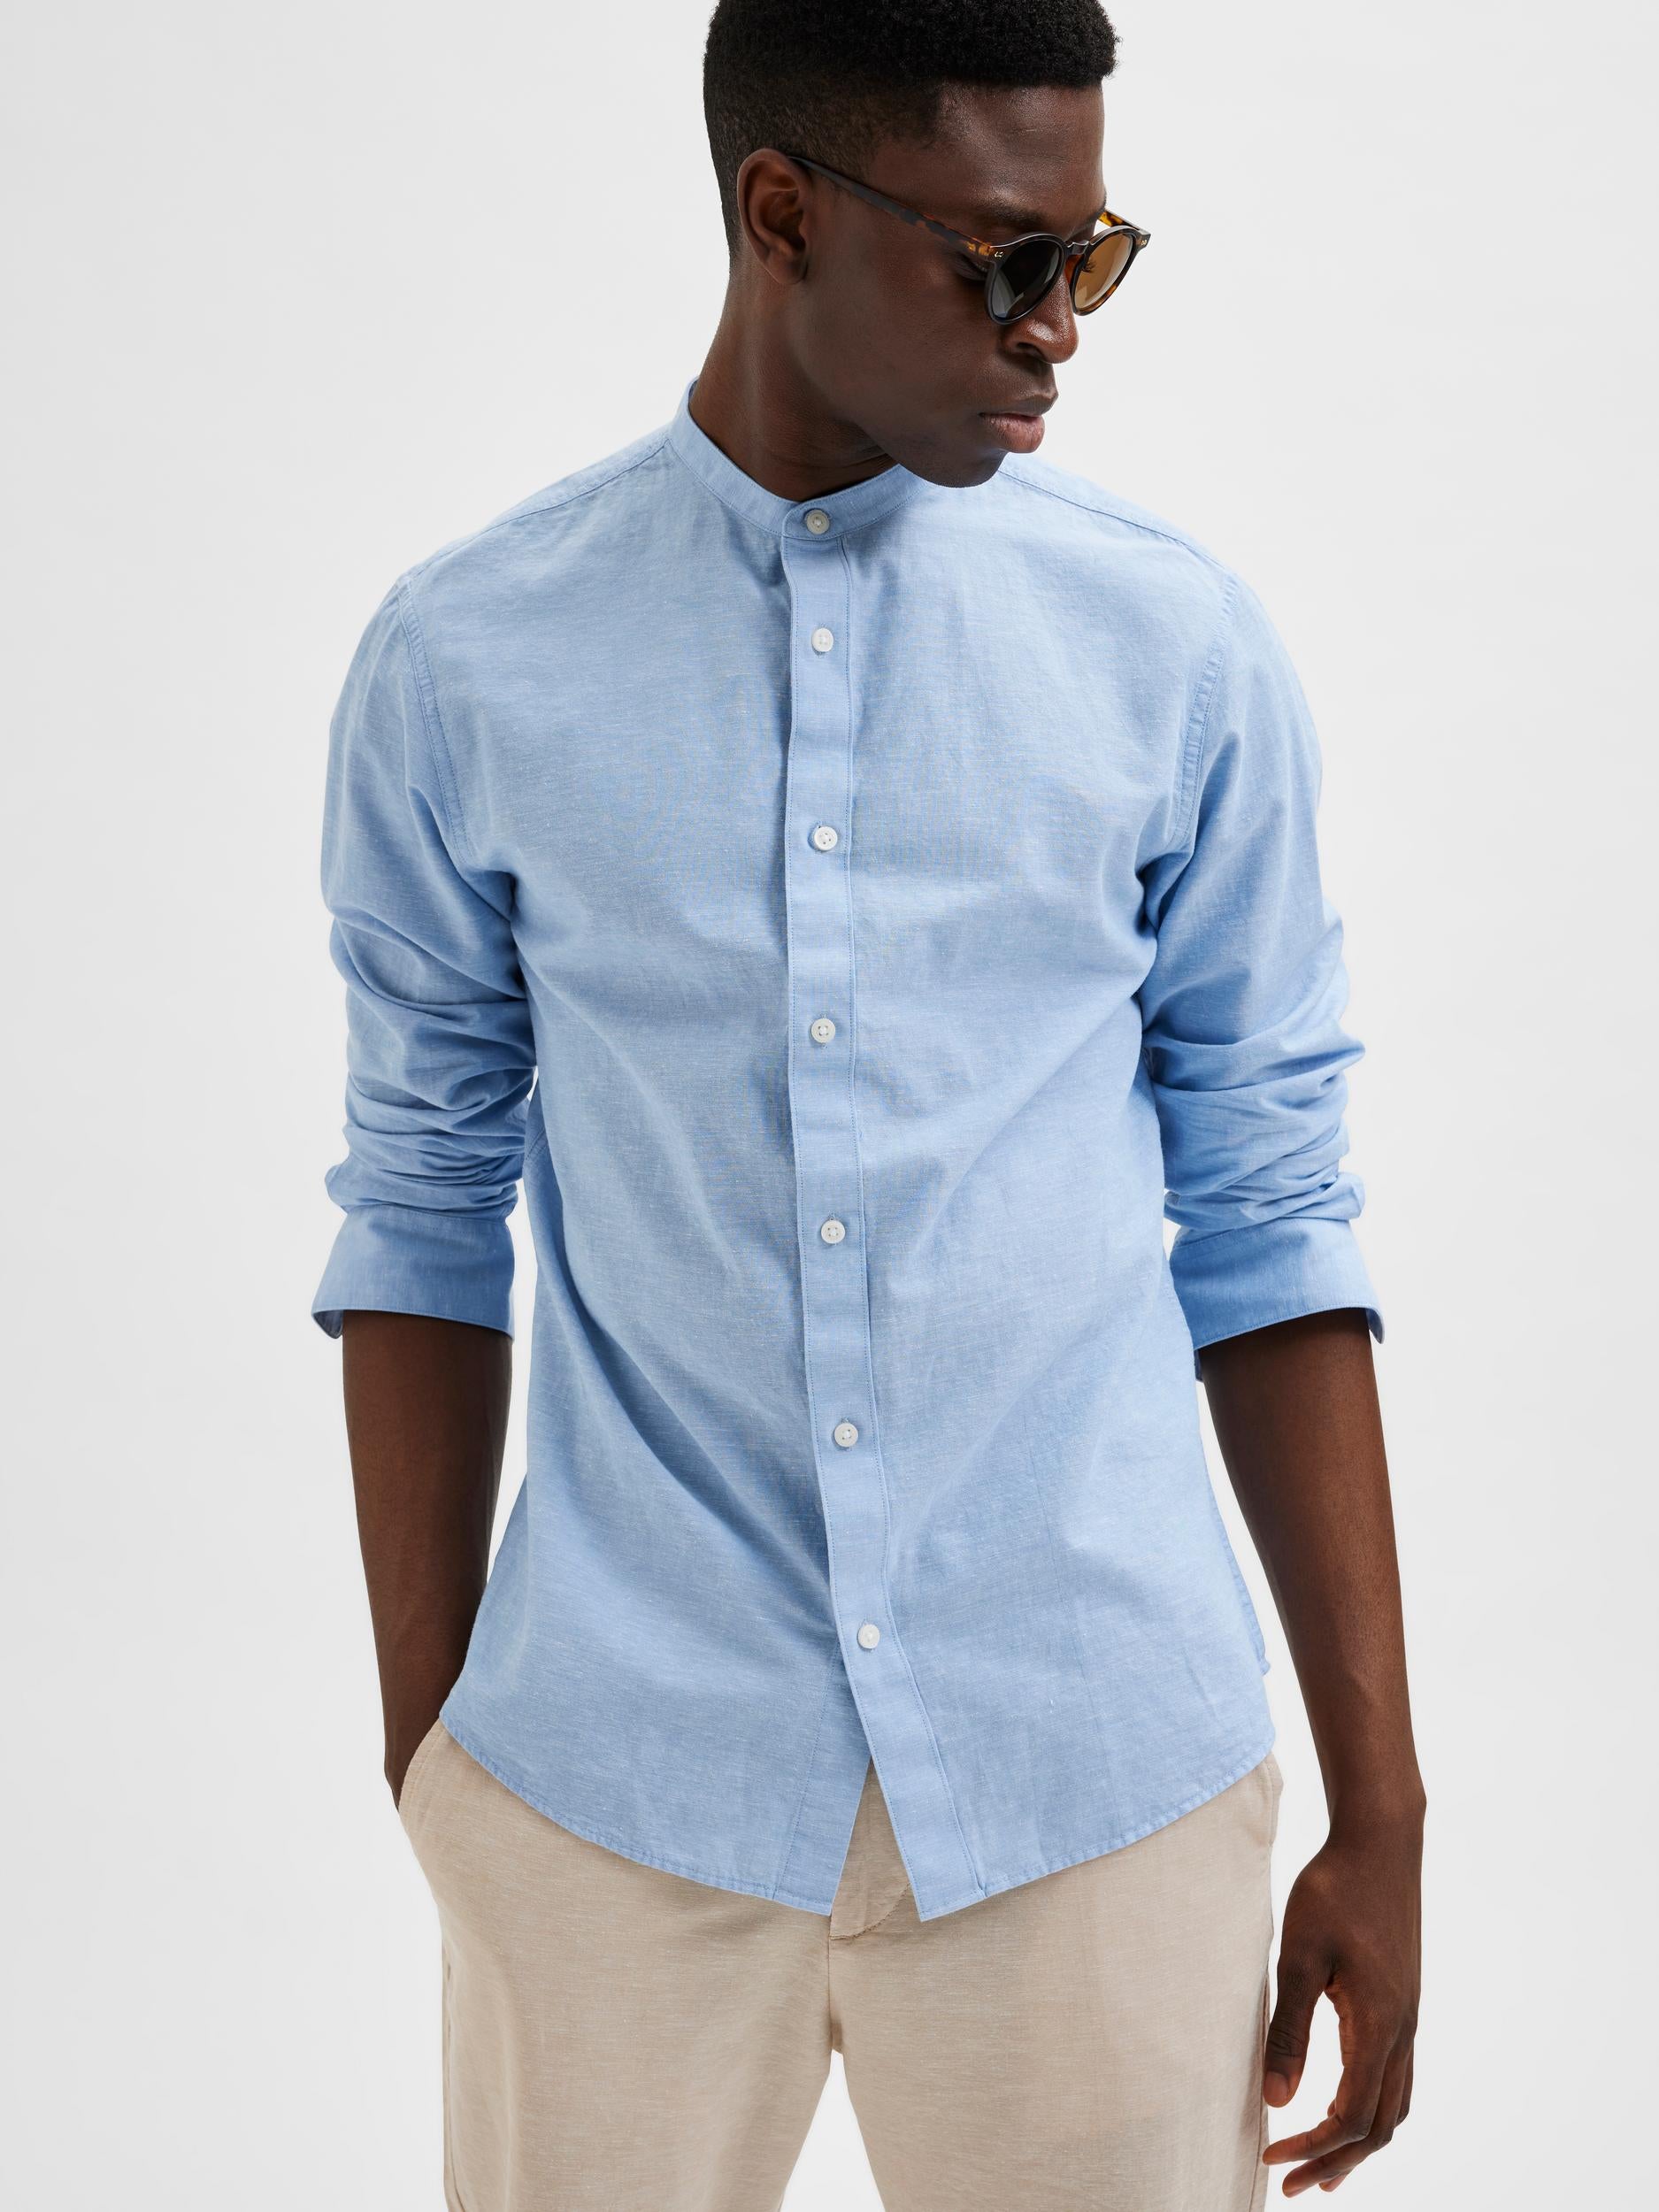 Selected light blue shirt with mandarin collar